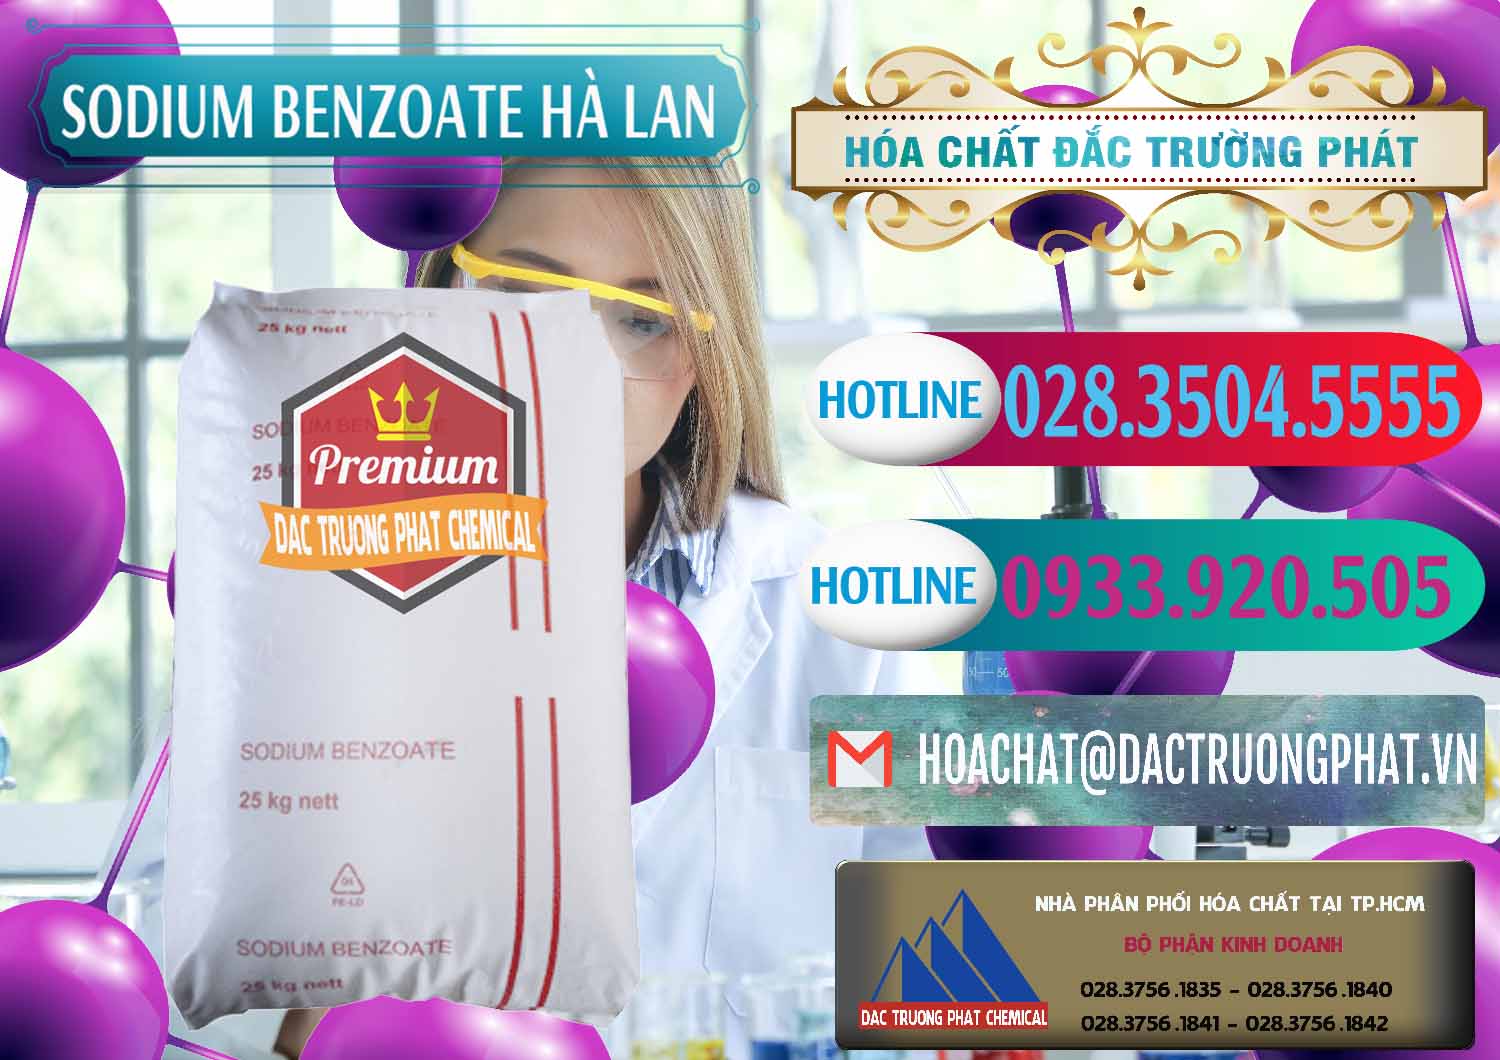 Cty phân phối và bán Sodium Benzoate - Mốc Bột Chữ Cam Hà Lan Netherlands - 0360 - Nơi cung cấp ( bán ) hóa chất tại TP.HCM - truongphat.vn